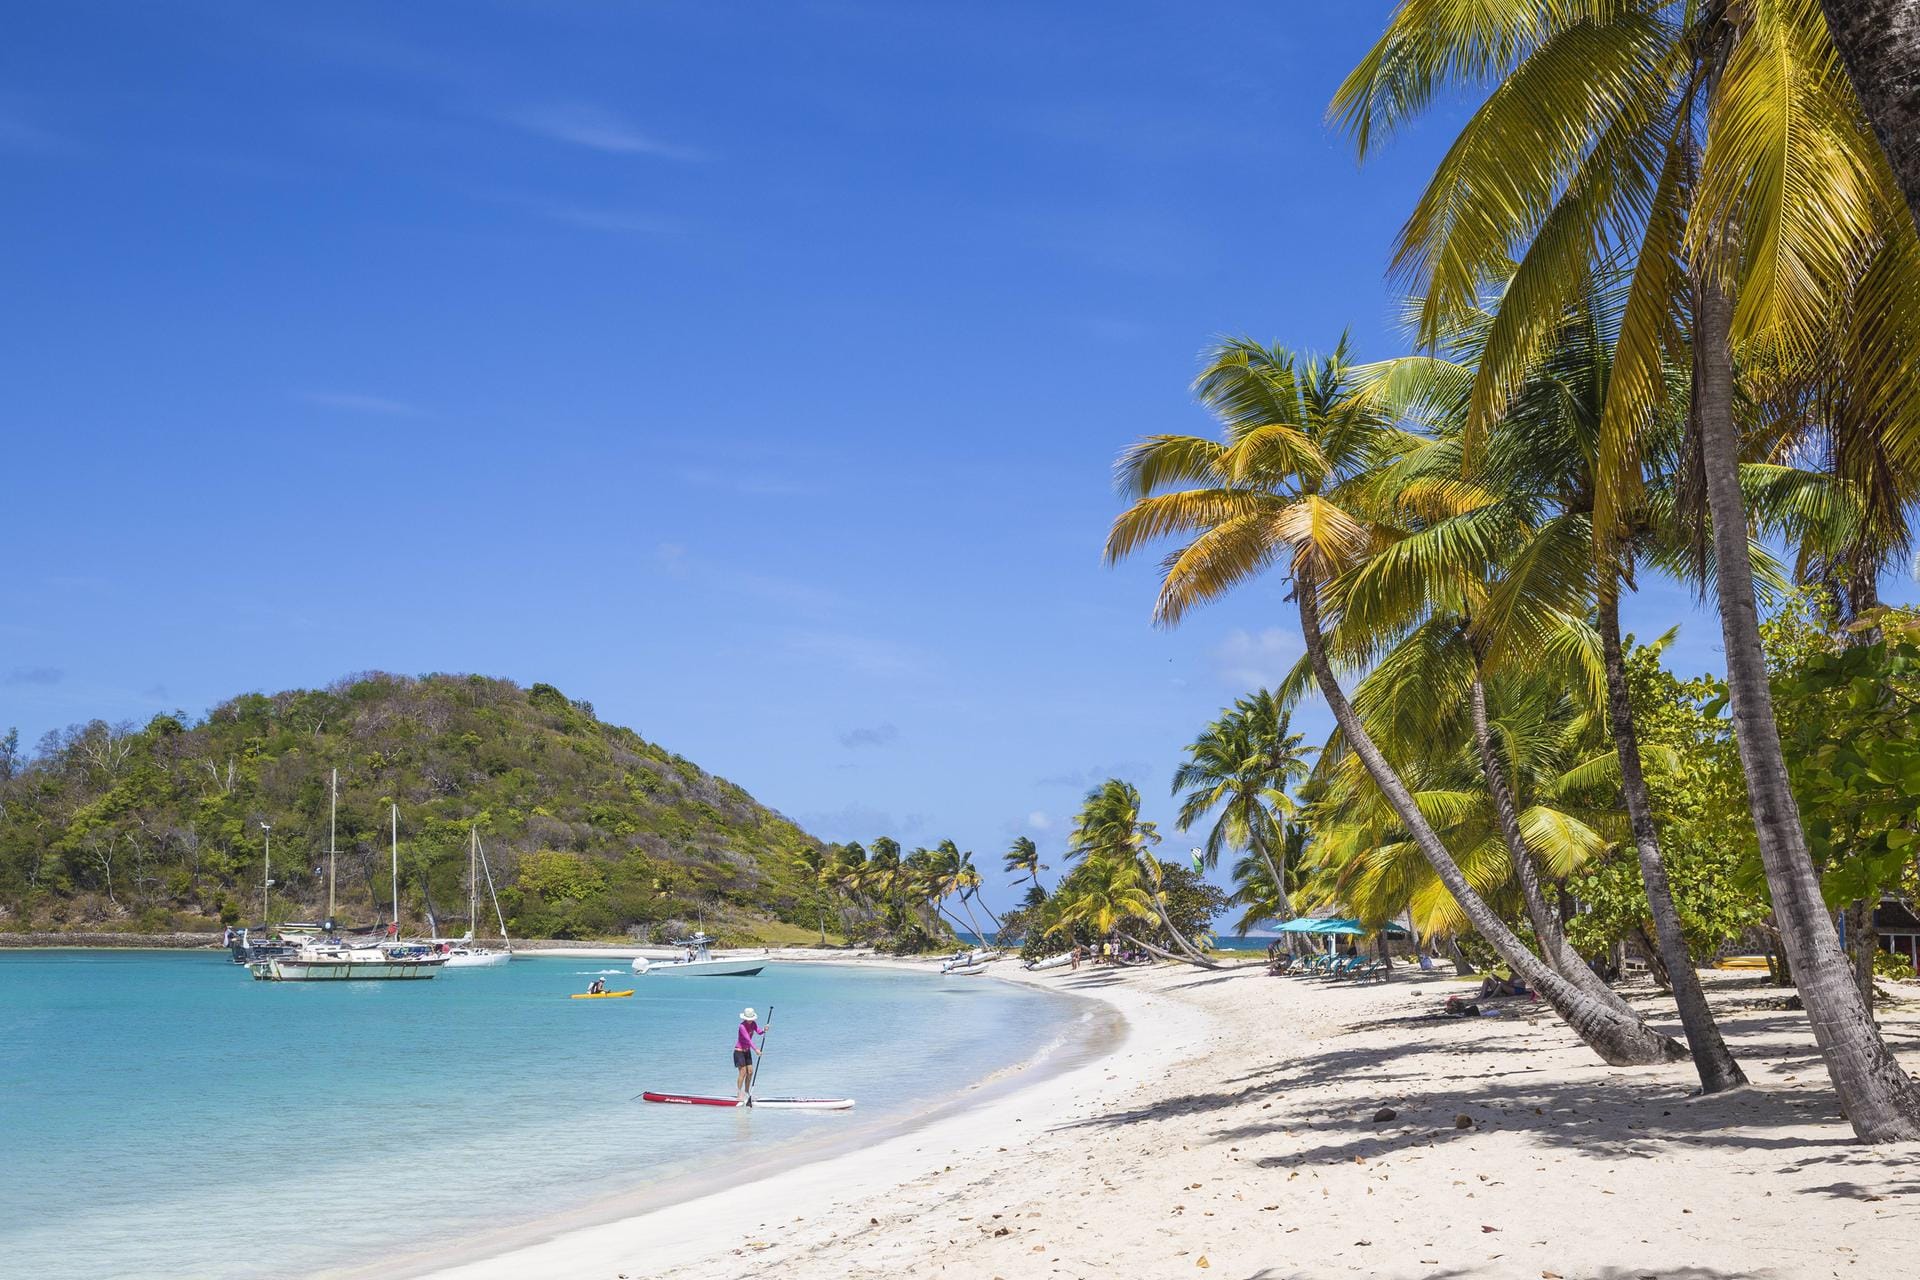 Karibik: Wer dem Winter in Europa entkommen möchte, findet bei einer Karibikkreuzfahrt Entspannung in warmen Gefilden.